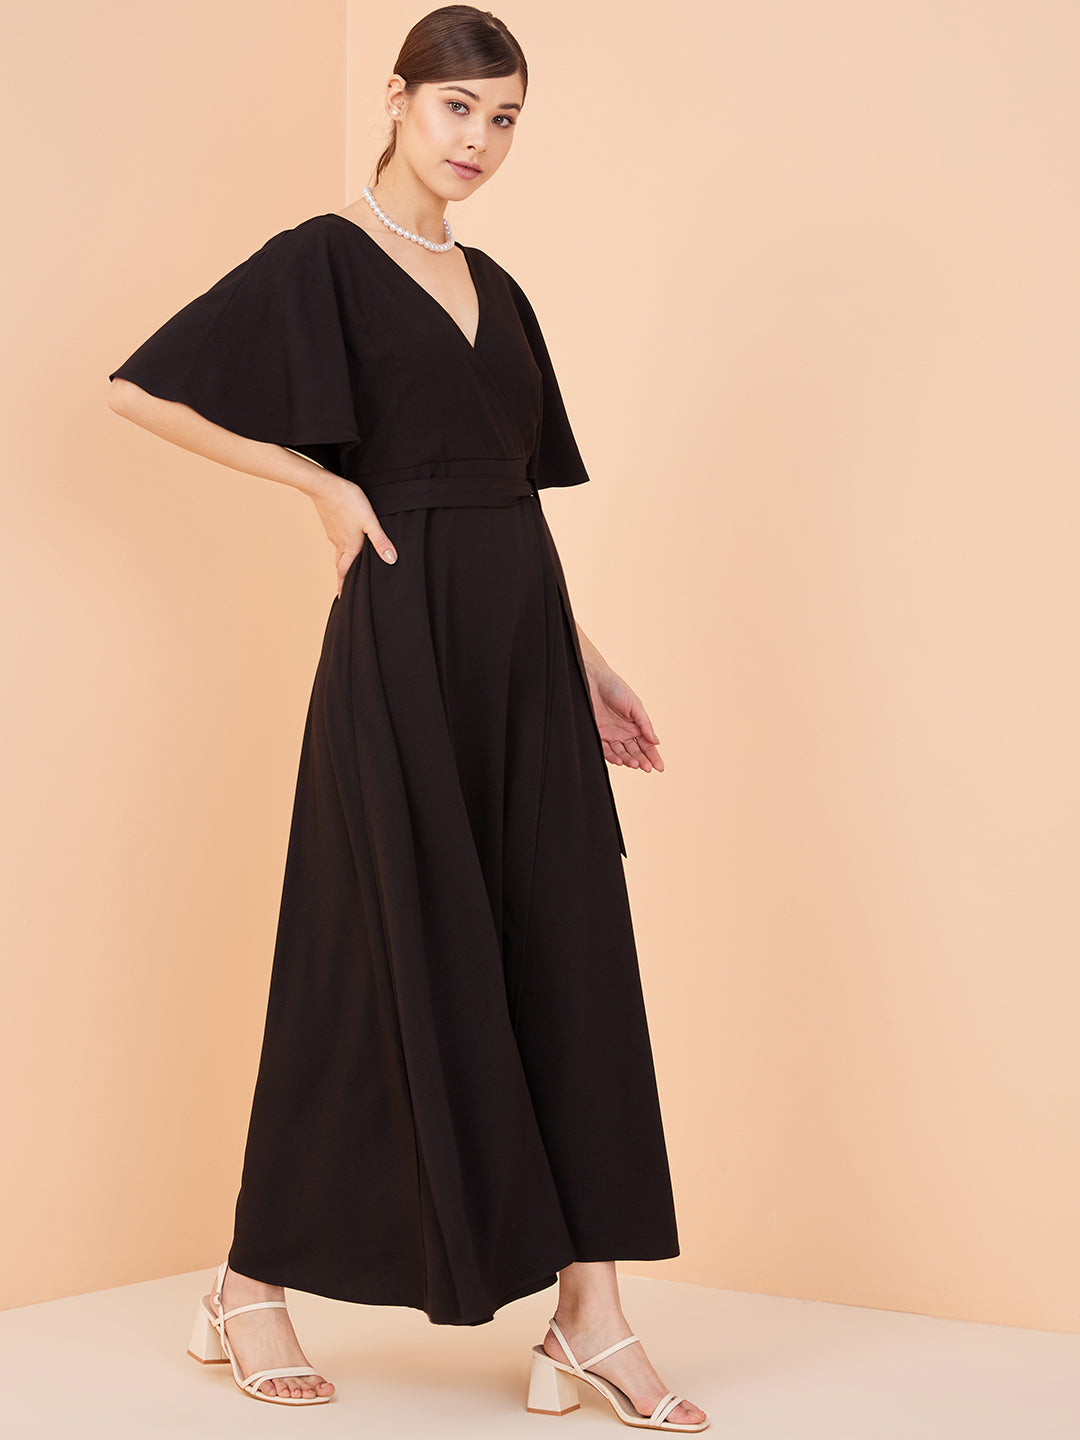 Black Kimono Wrap Maxi Dress